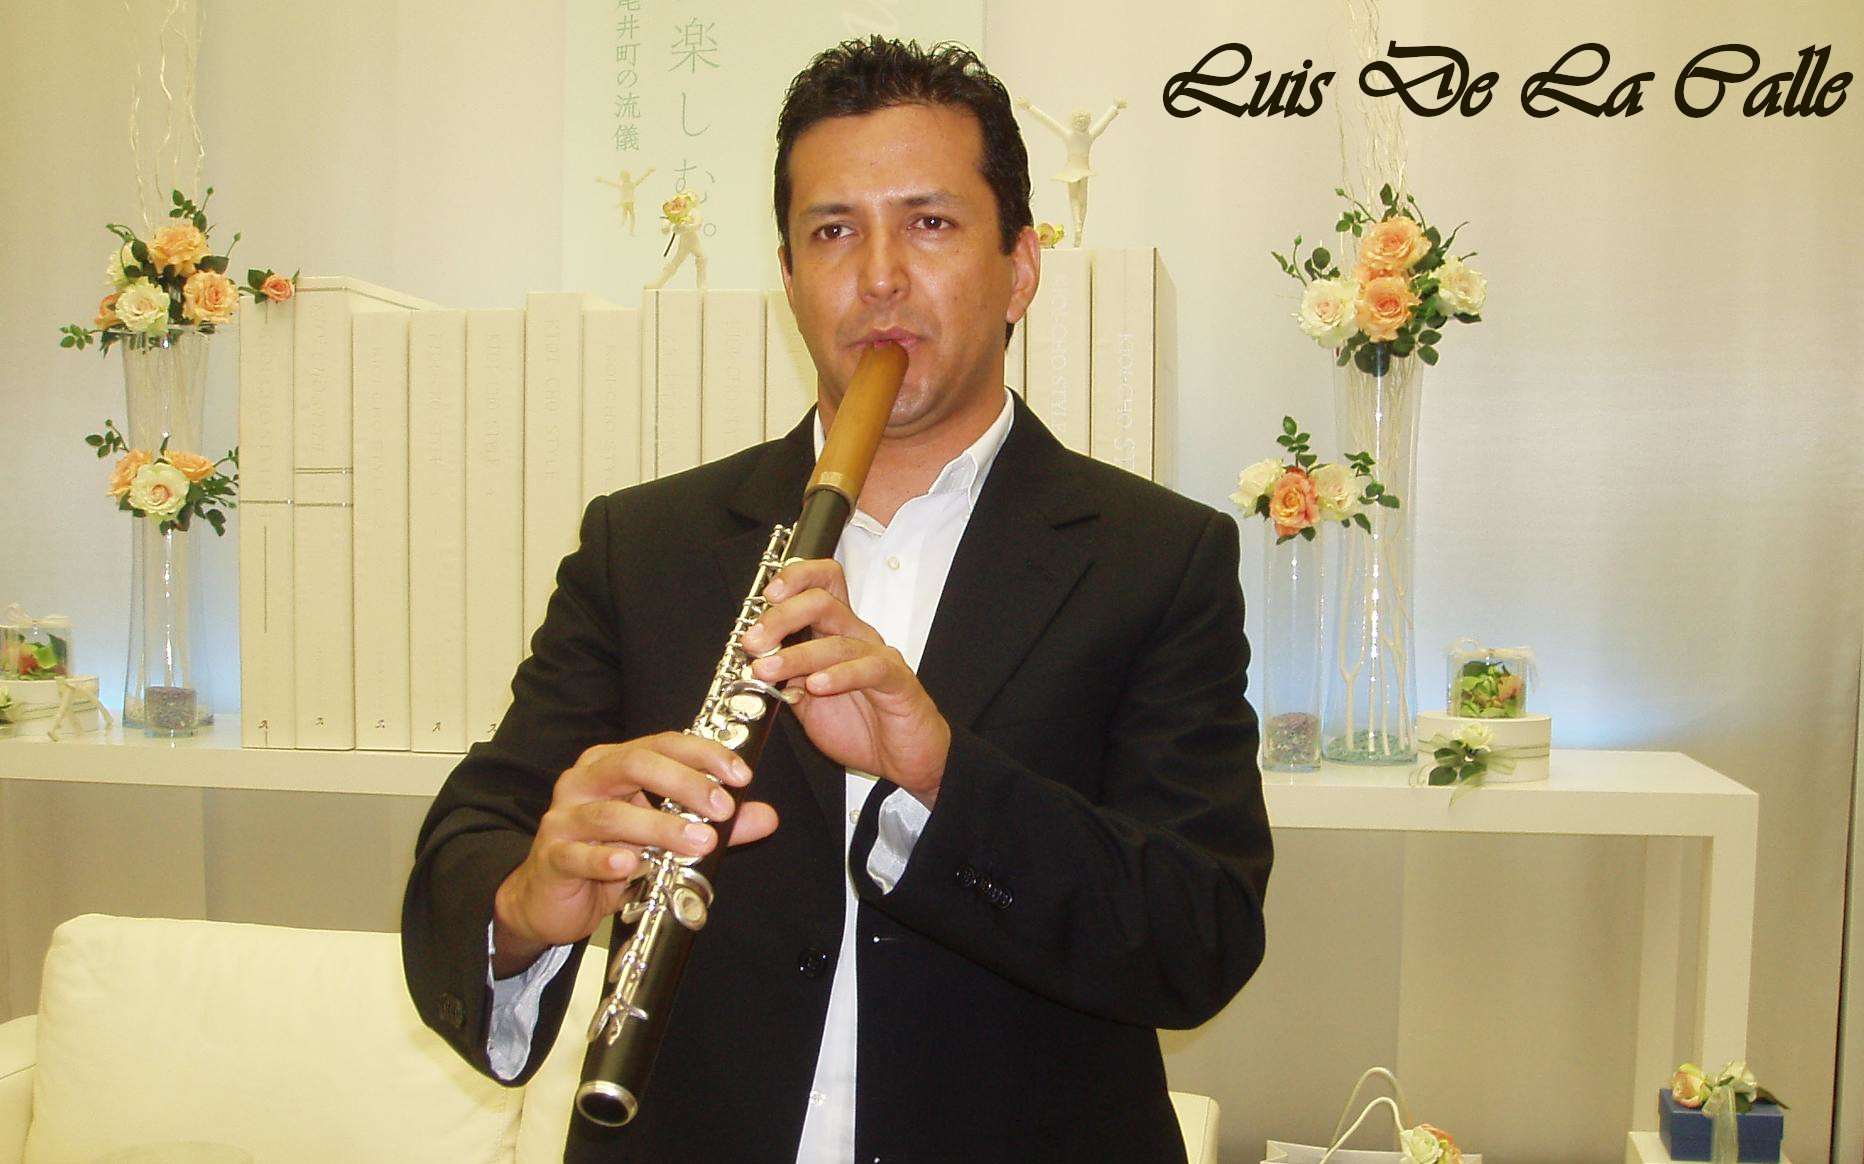 Luis De La Calle